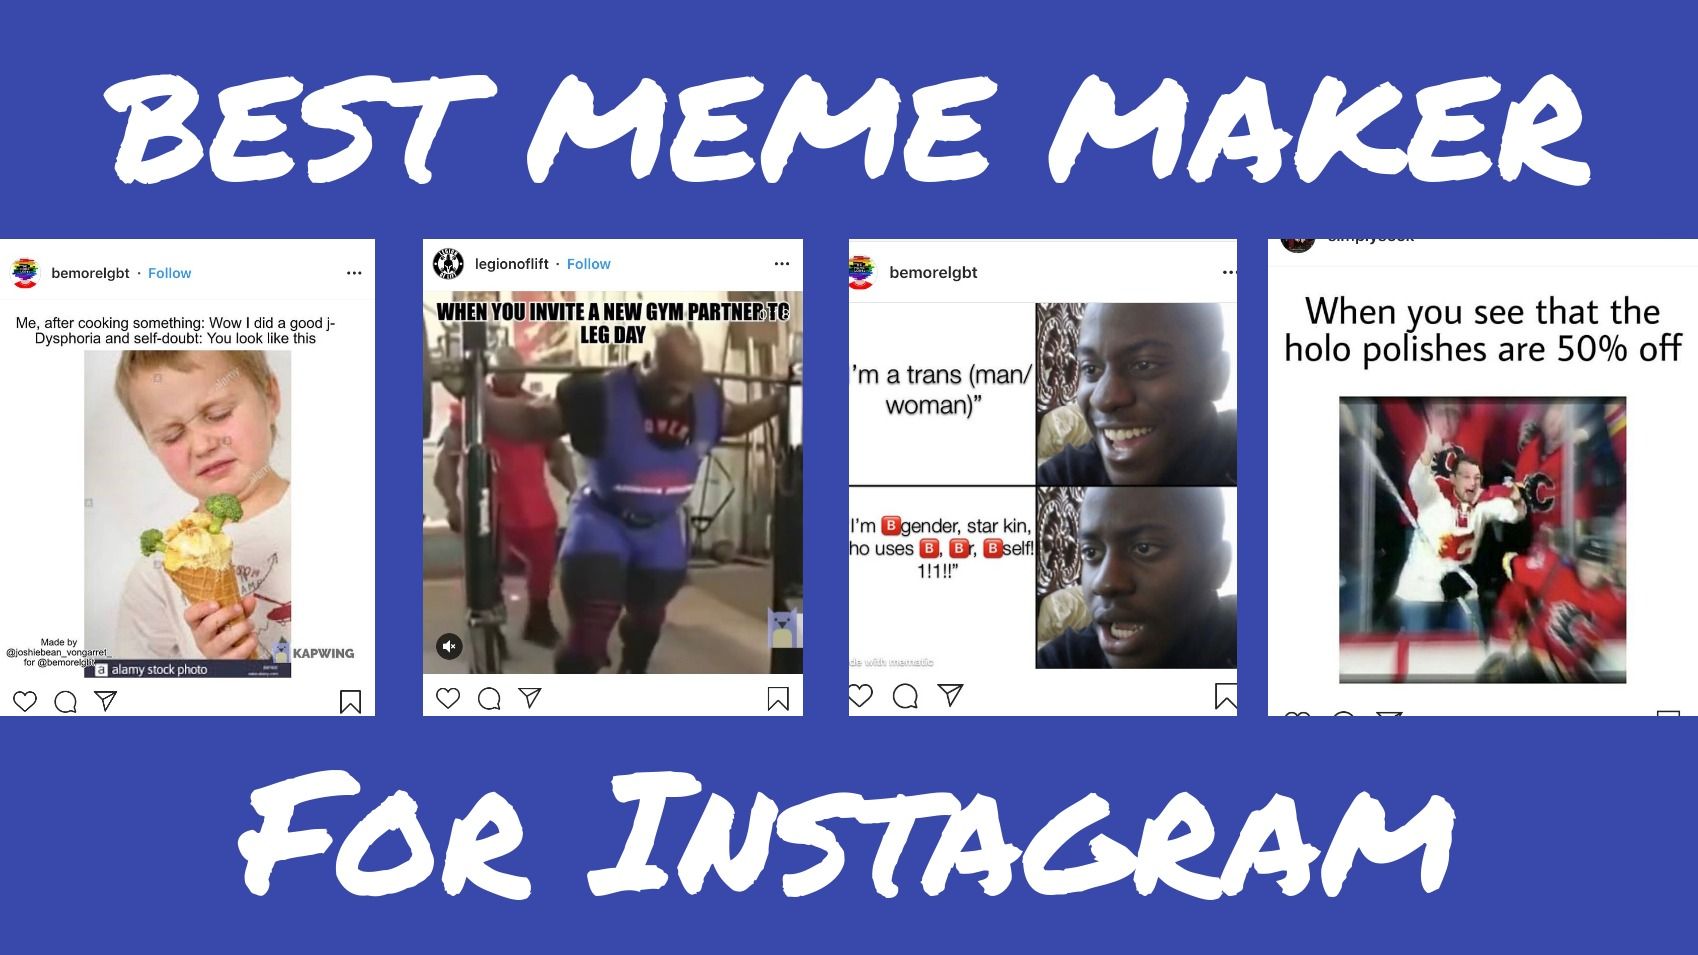 Best Meme Maker for Instagram (2019) - 1698 x 955 jpeg 168kB